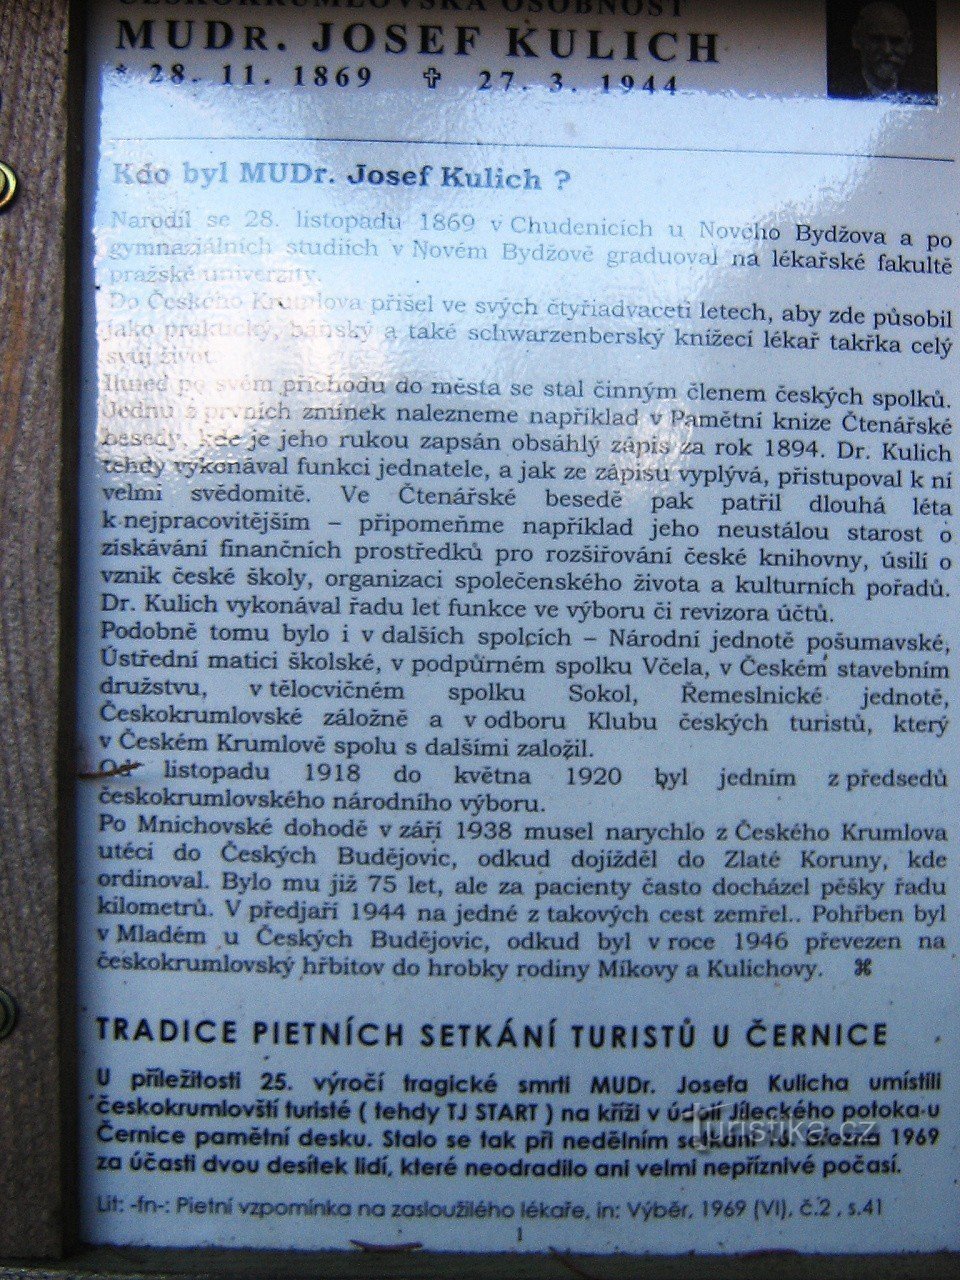 Kulich's kruis in de buurt van Černice